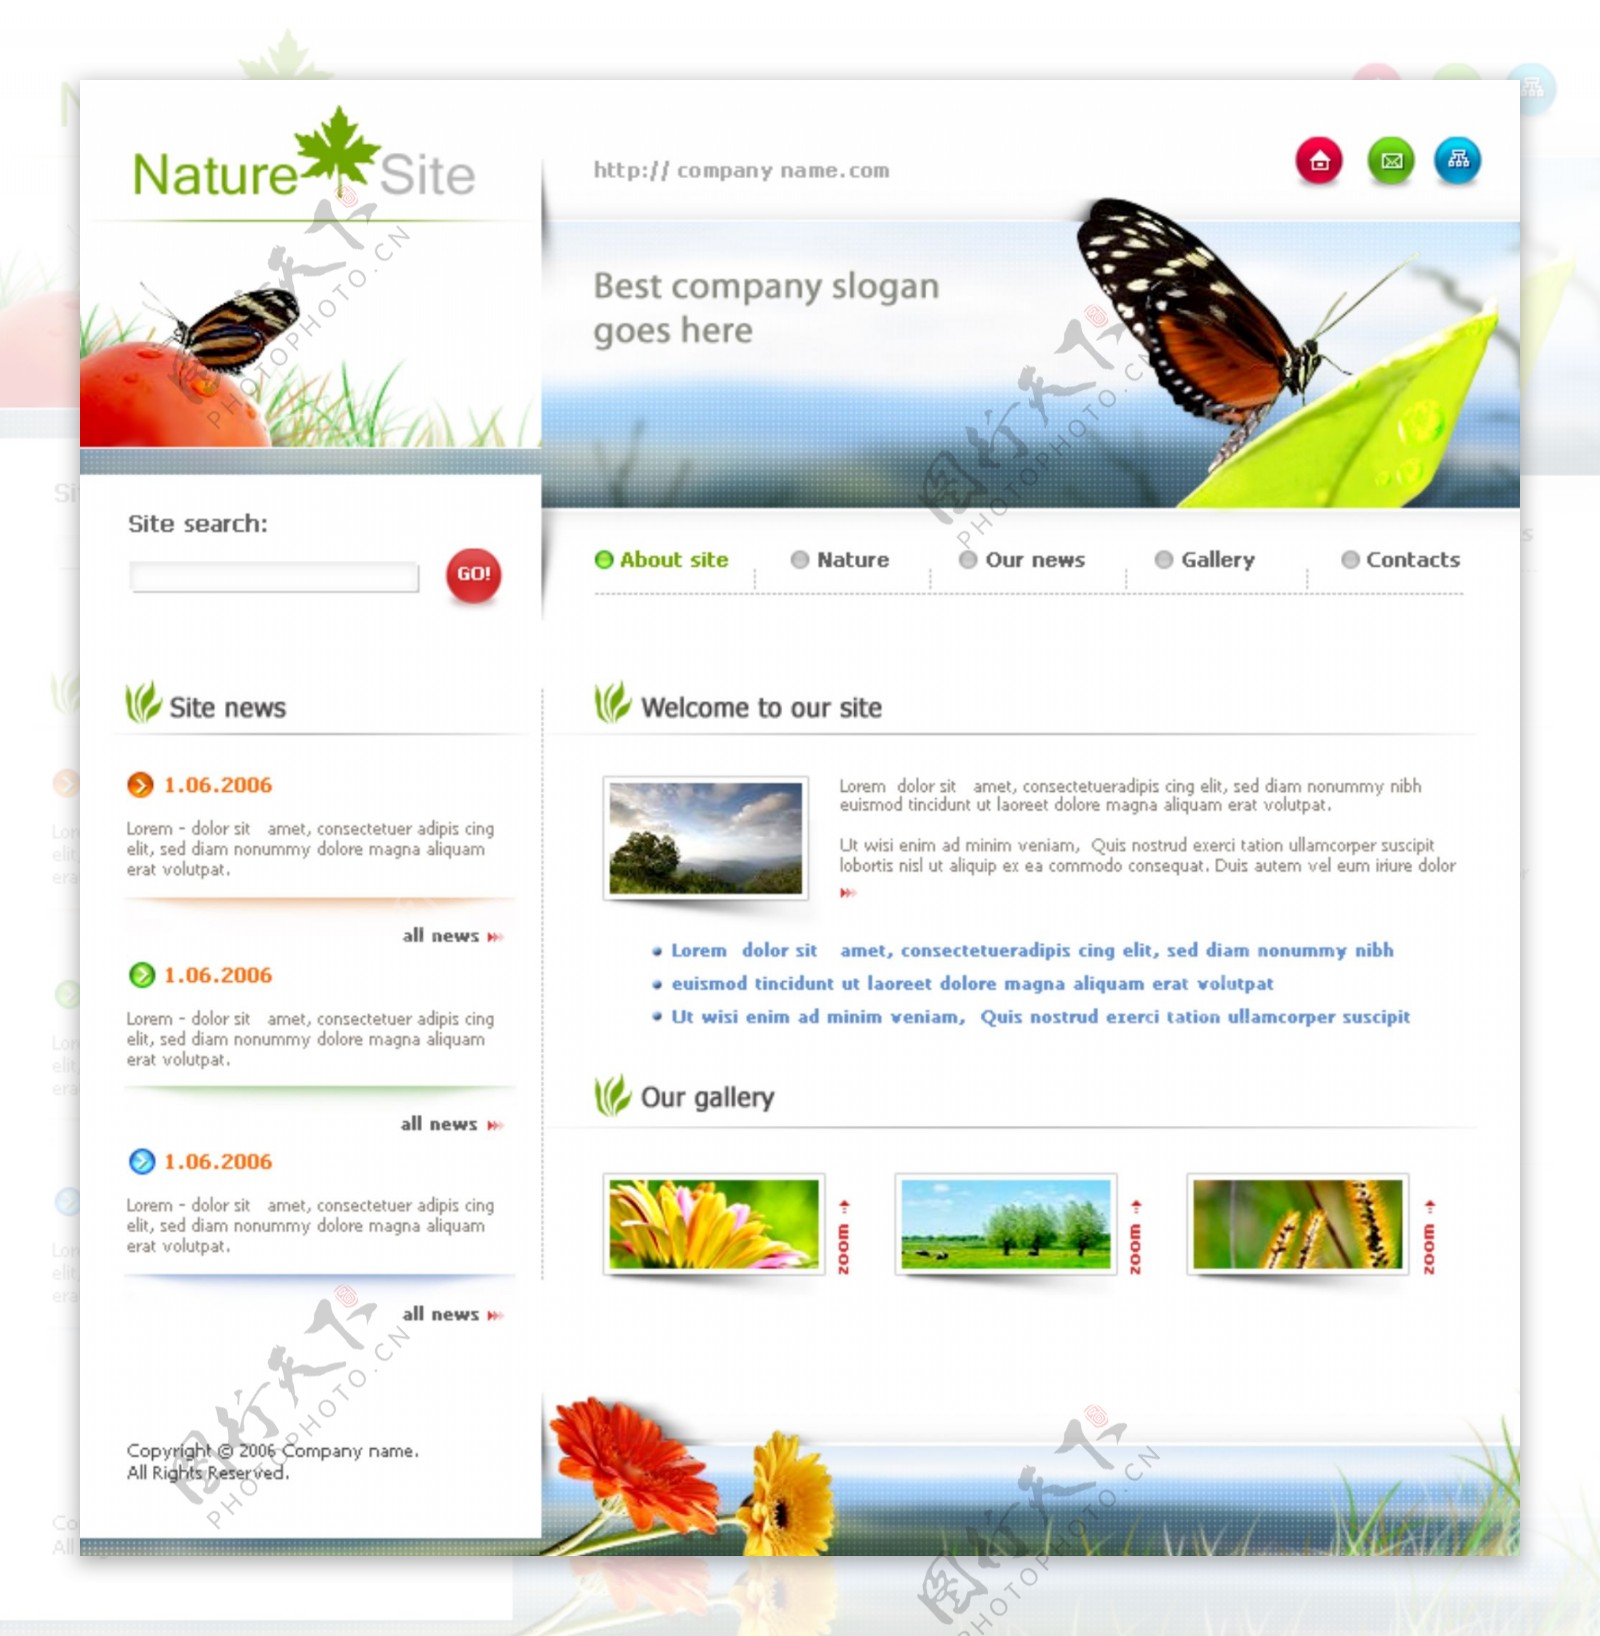 天然生态研究网页模板